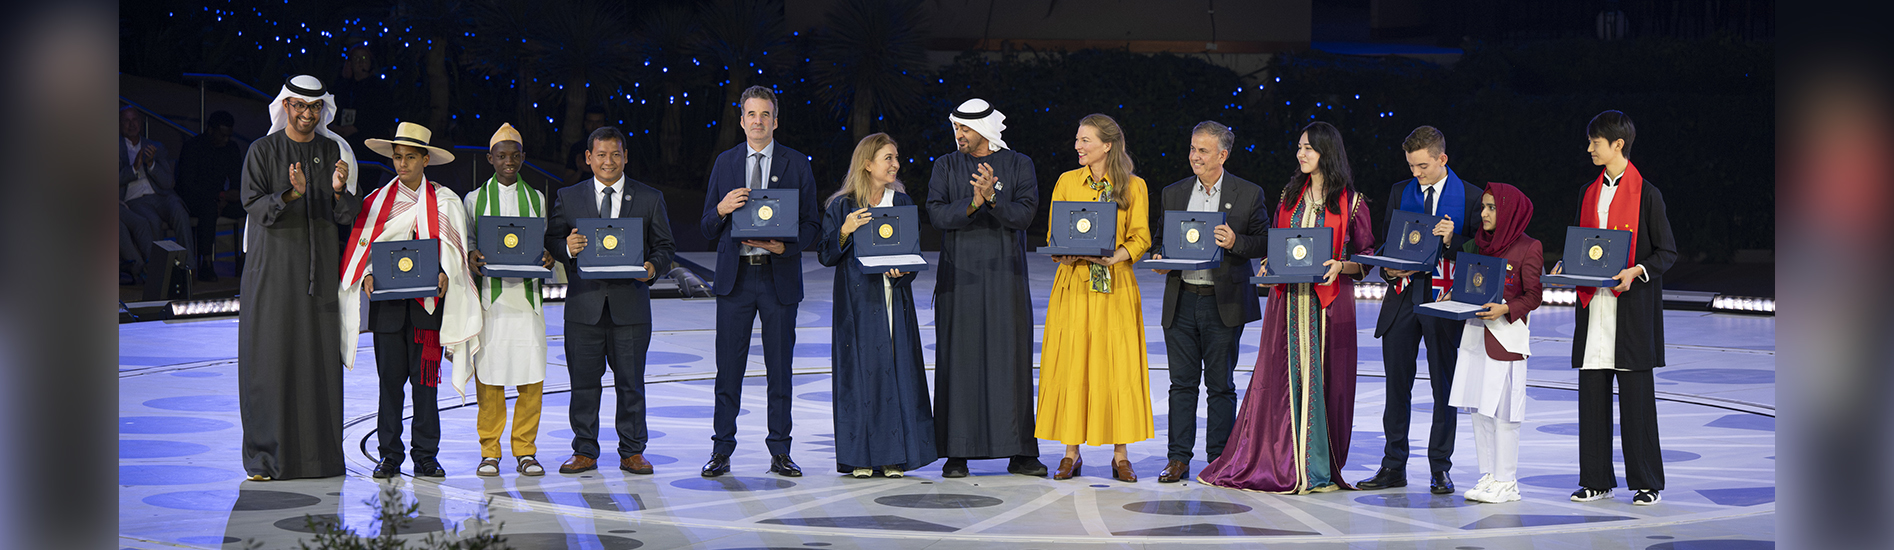 Mohamed bin Zayed récompense 11 nouveaux lauréats du prix Zayed pour le développement durable à la COP28 EAU